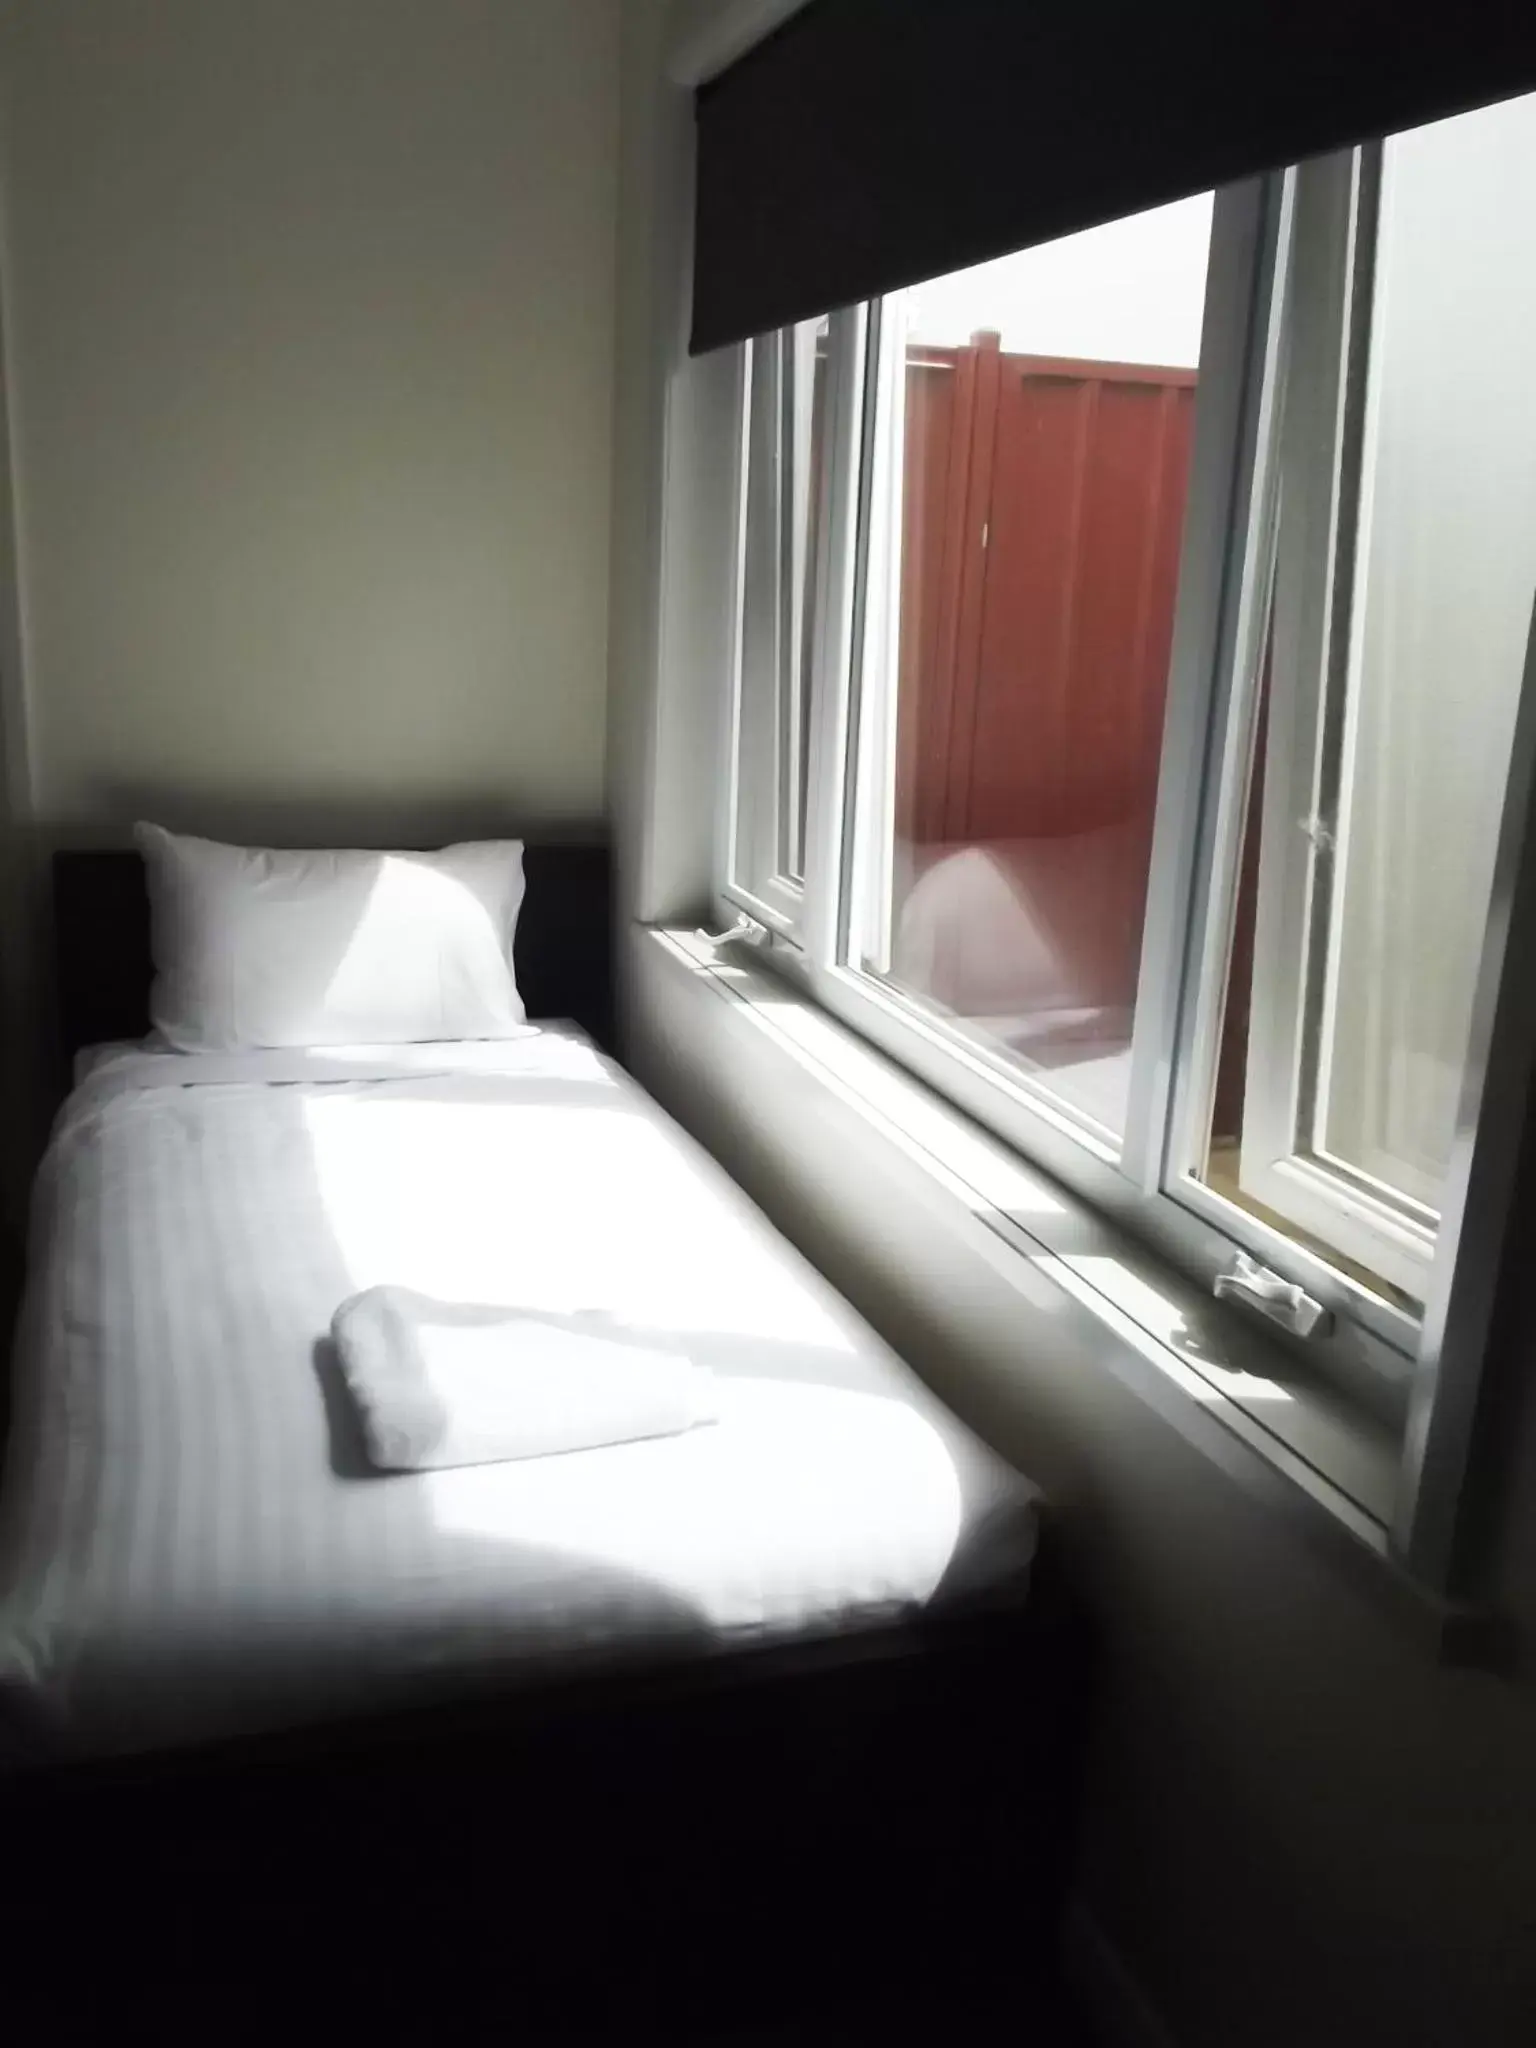 Bed in Heyfield Railway Hotel